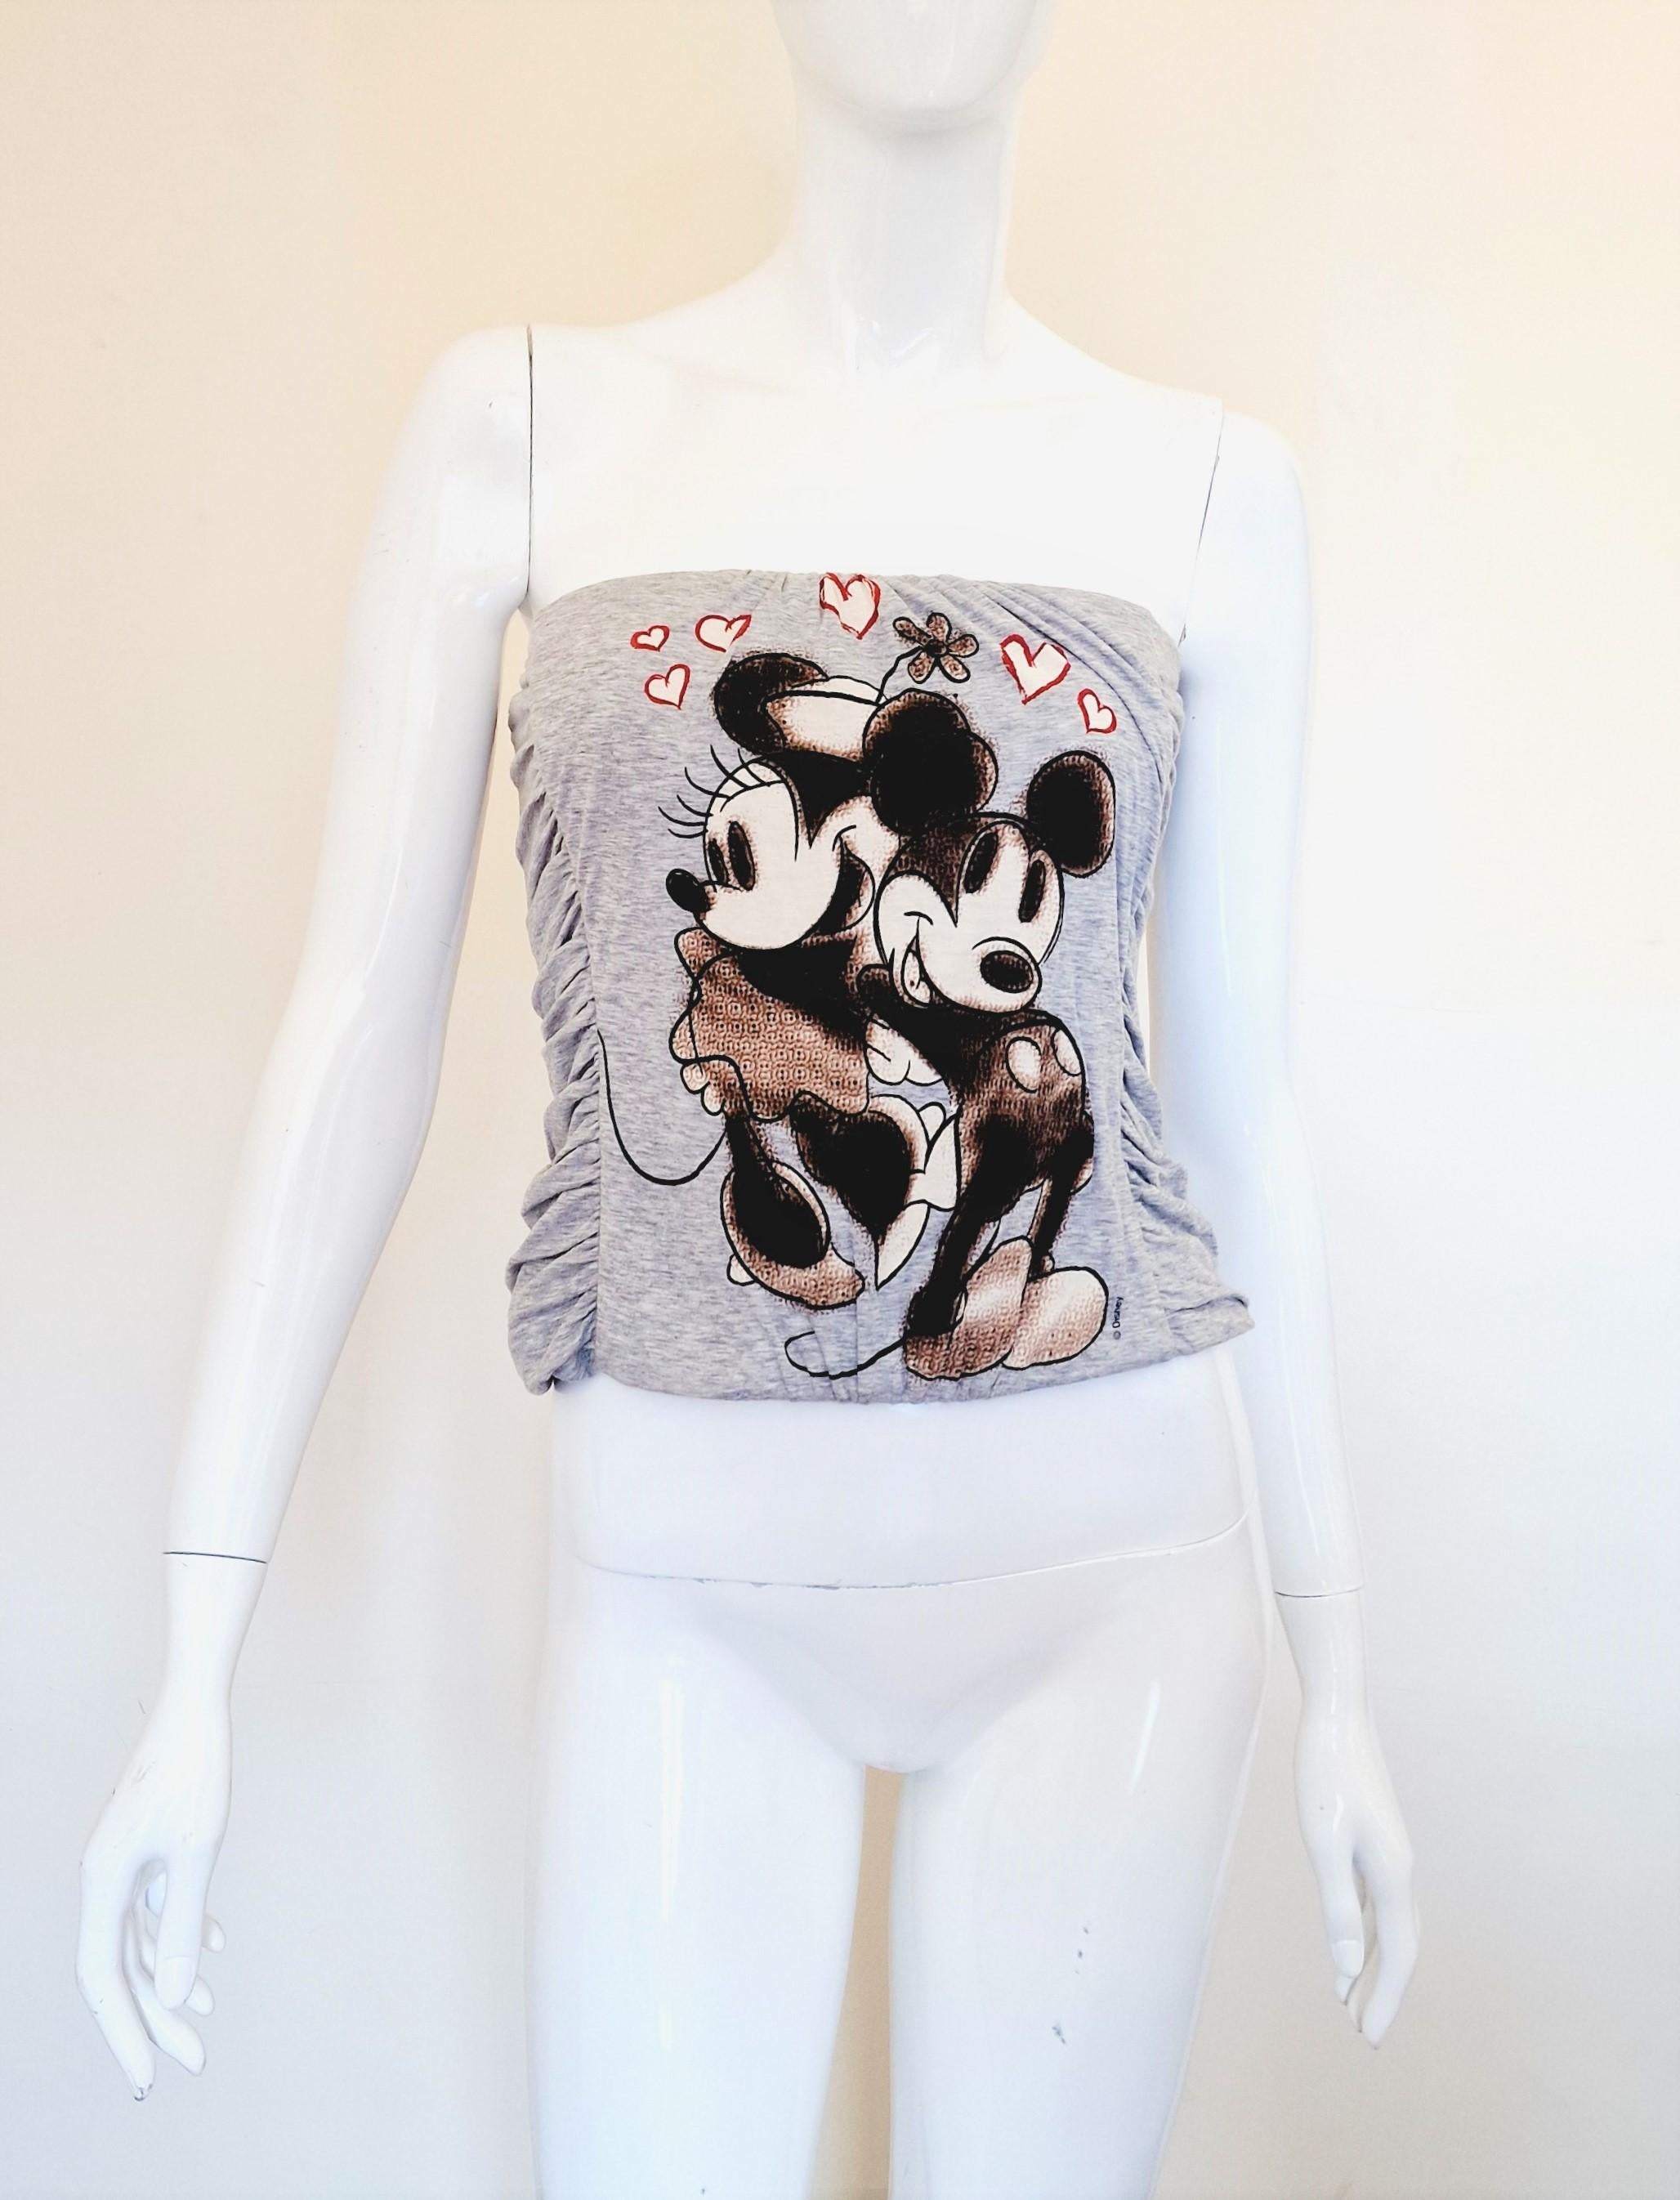 Rare corset Dolce and Gabbana Minnie & Mickey Mouse désossé !
De la collection Femme automne-hiver 2004/2005 !

EXCELLENT état !

TAILLE
Convient aux tailles petites à moyennes. Extensible !
Taille marquée : IT40.
Veuillez vérifier les mesures